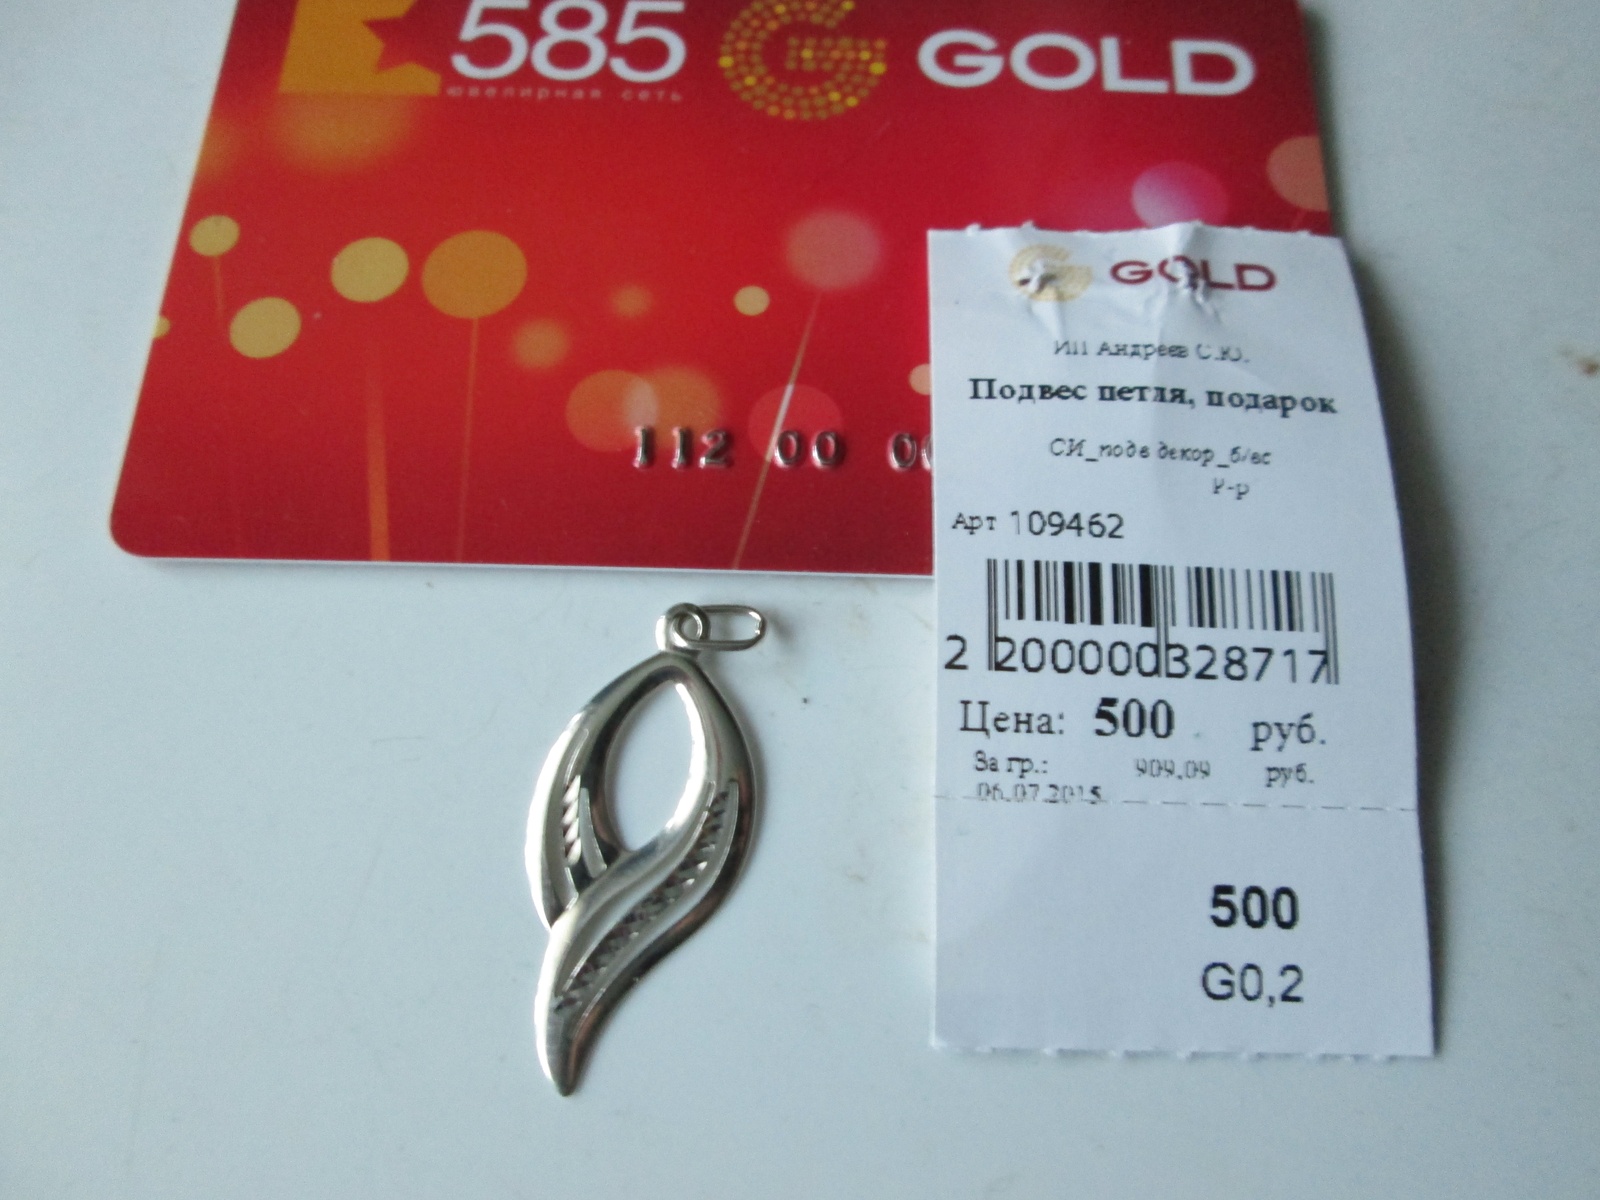 Золото 585 ru. Подарок от 585 Голд. Подвеска в подарок от 585. Золото 586 магазин.